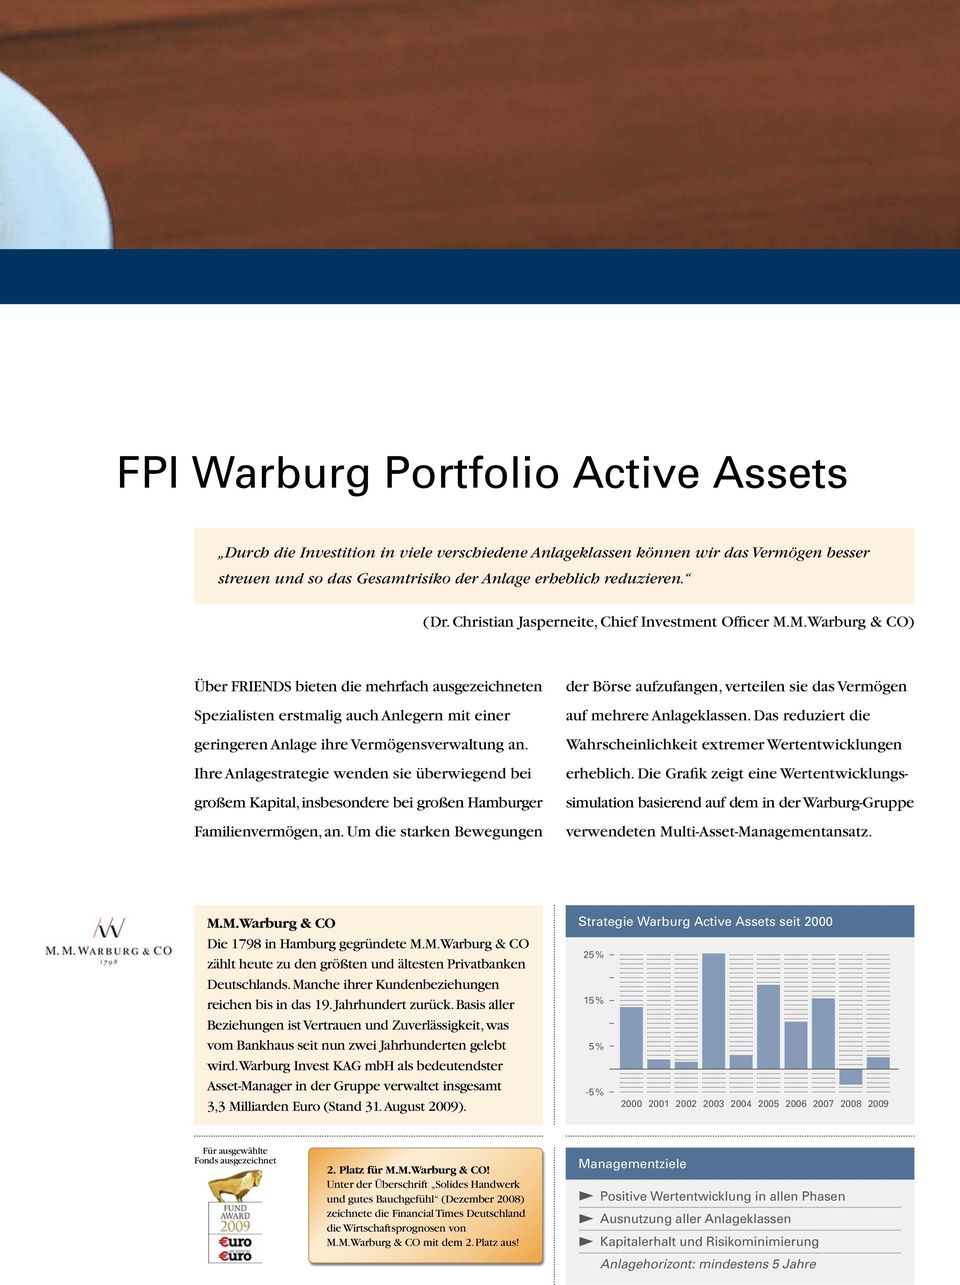 M.Warburg & CO) Über FRIENDS bieten die mehrfach ausgezeichneten Spezialisten erstmalig auch Anlegern mit einer geringeren Anlage ihre Vermögensverwaltung an.